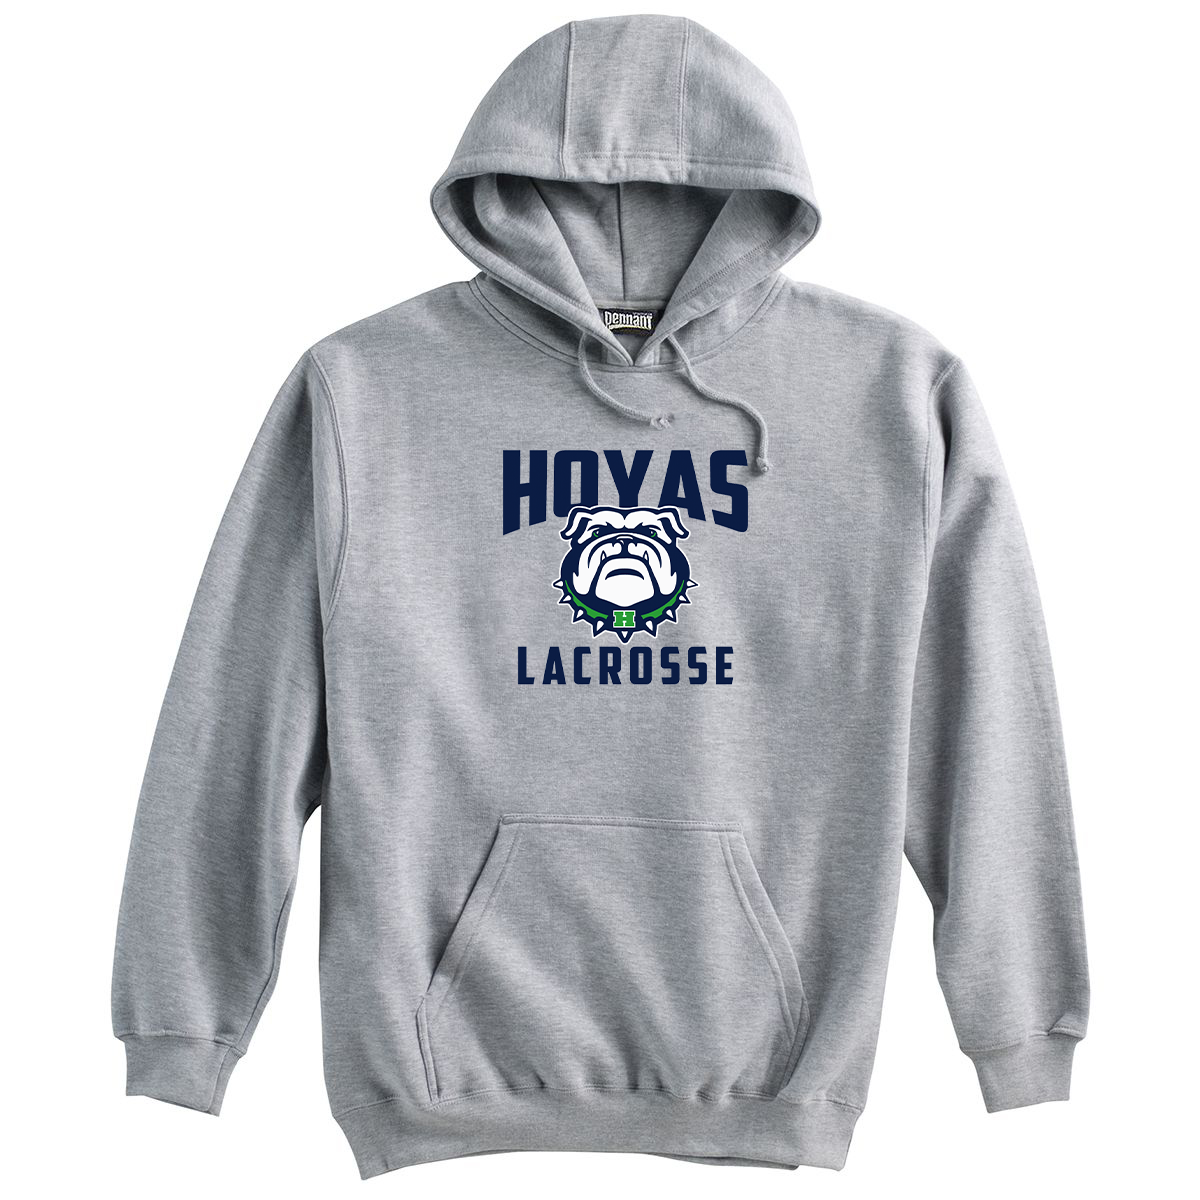 Hoya Lacrosse Sweatshirt